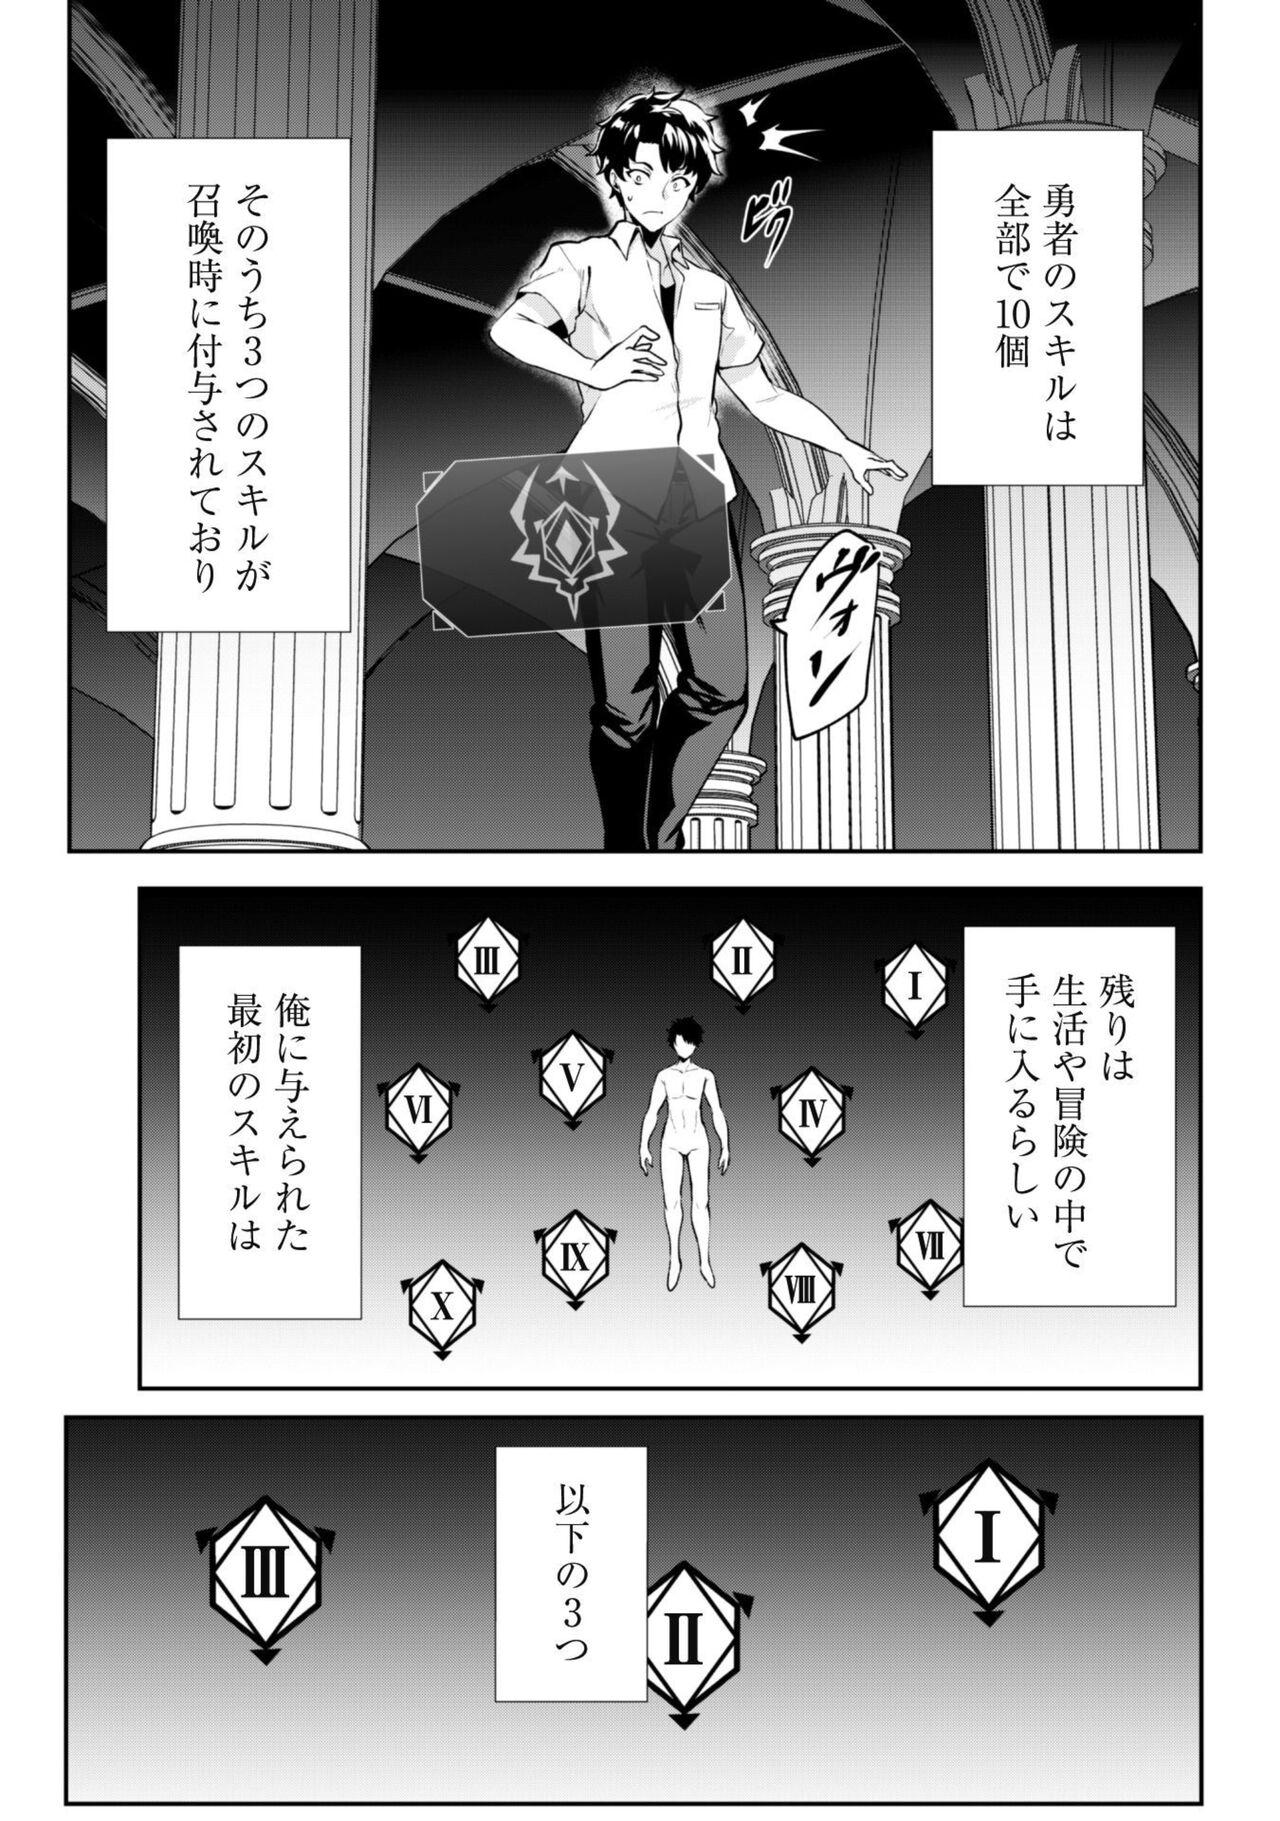 Hotwife Hangyaku no Yūsha 〜 Sukiru o Tsukatte Haraguro ōjo no Kokoro to Karada o Shōaku seyo 〜 1 Monster Dick - Page 6